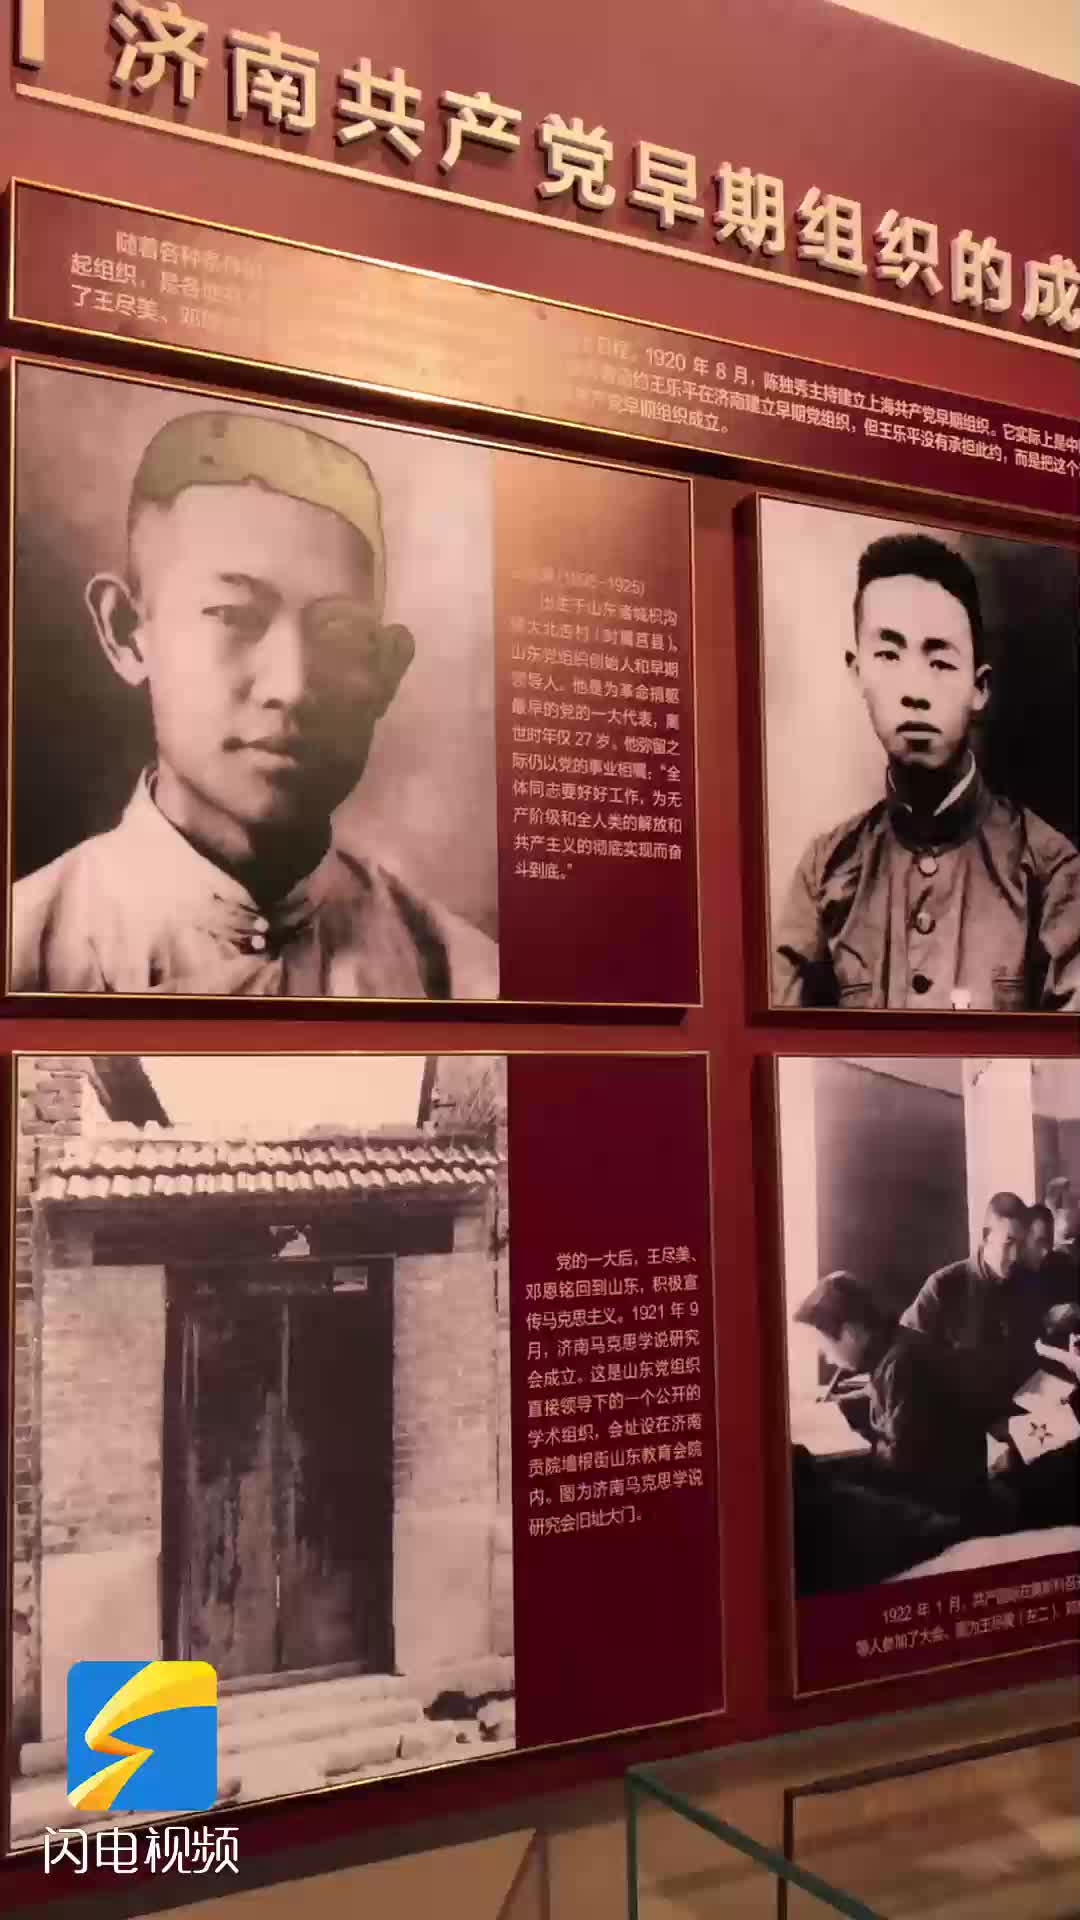 影像背后的故事我来说丨党的一大后，王尽美邓恩铭在山东积极传播马克思主义